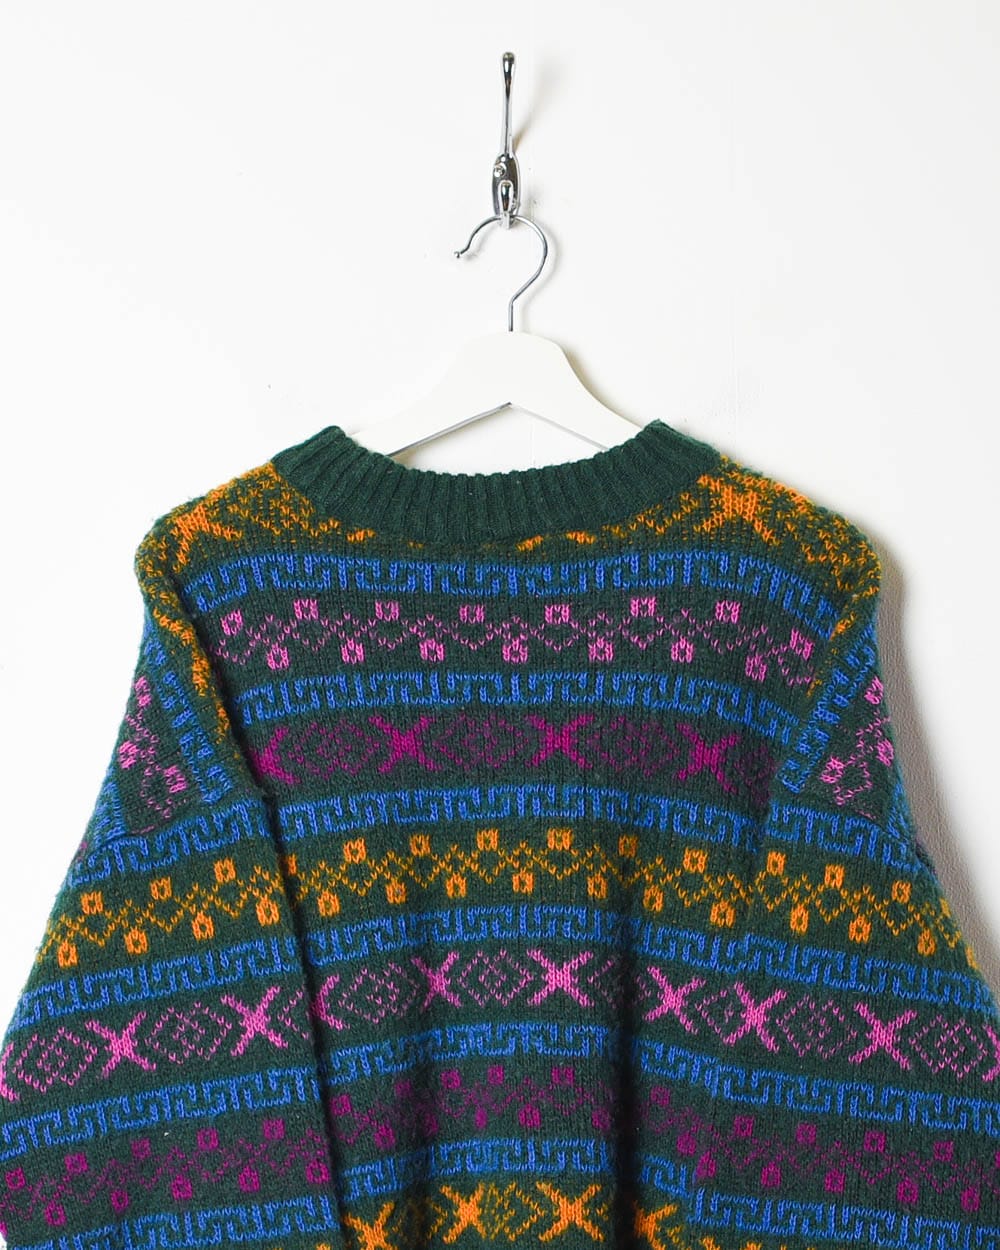 Multi Vintage Patterned Knitted Sweatshirt - Medium